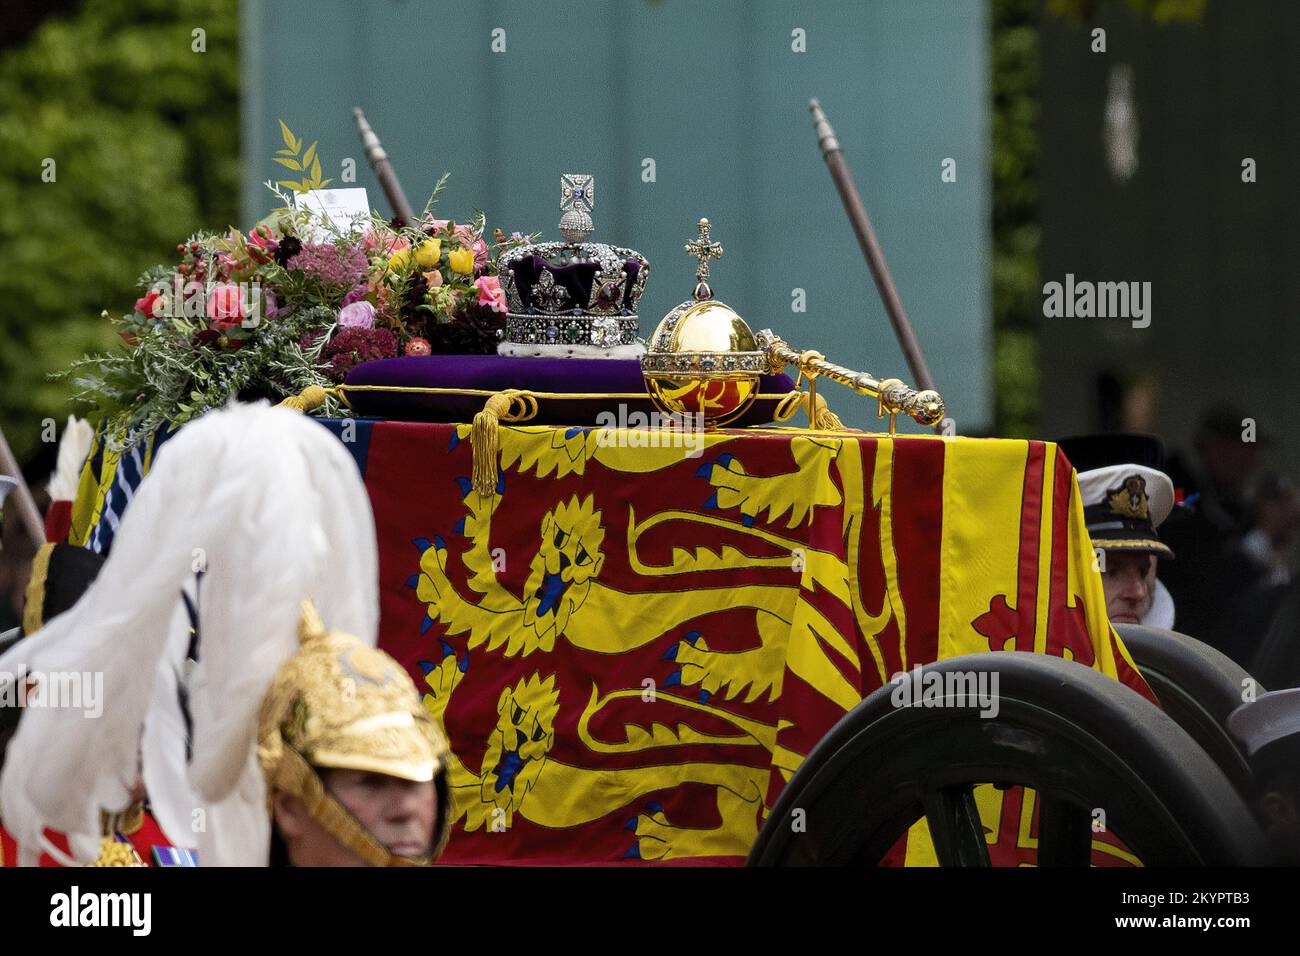 LONDRES, ANGLETERRE: La procession funéraire de l'État pour la Reine Elizabeth II comme vu du Mall après le service à l'abbaye de Westminster. Avec: Queen Elizabeth II où: Londres, Royaume-Uni quand: 19 sept 2022 crédit: Neil Lupin/WENN Banque D'Images